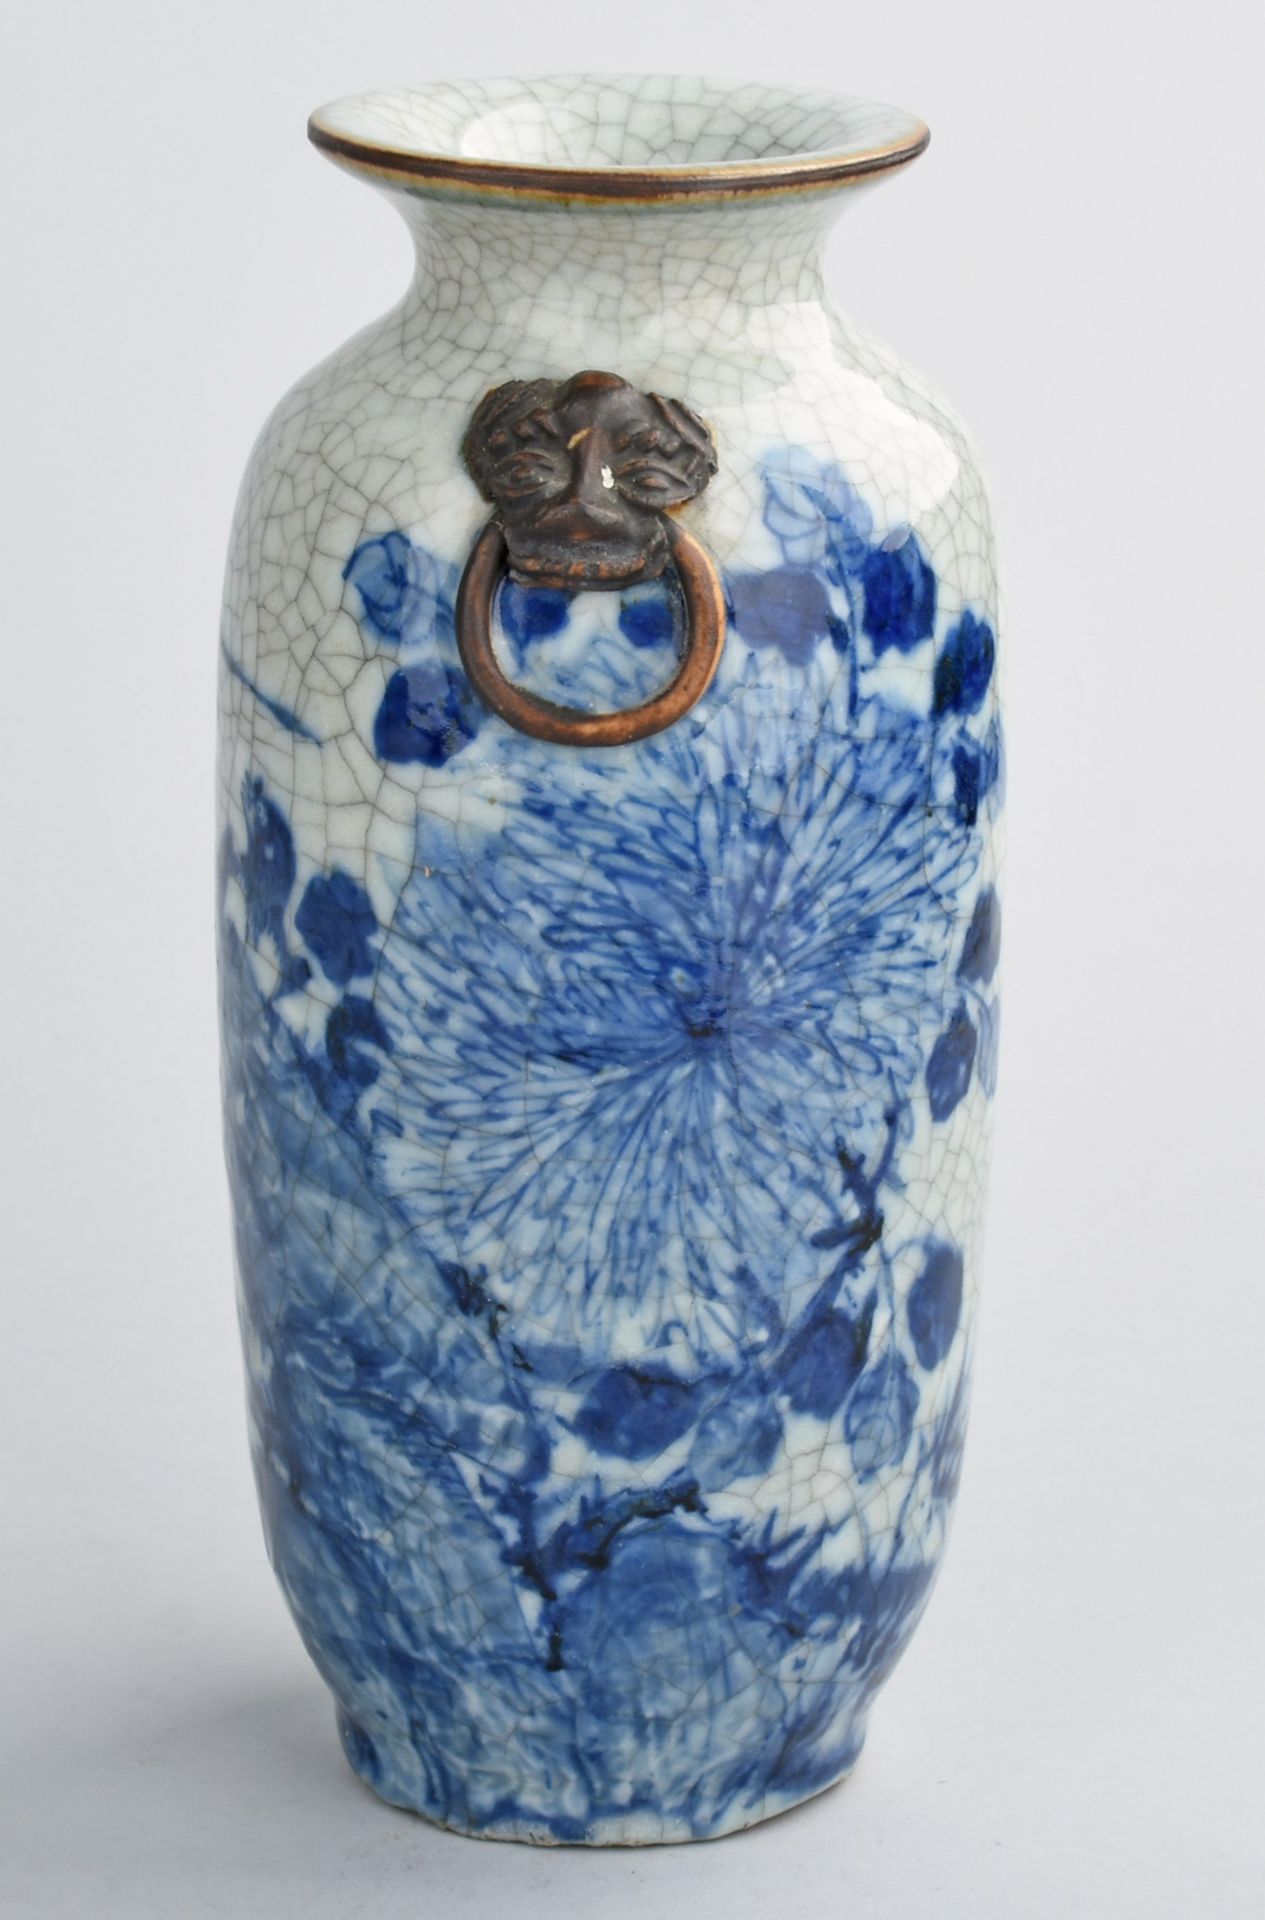 Asiatische Vase Pressmarke, brauner Scherben, Stangenform mit geschnürtem Hals, graue Krakeleeglasur - Bild 3 aus 5